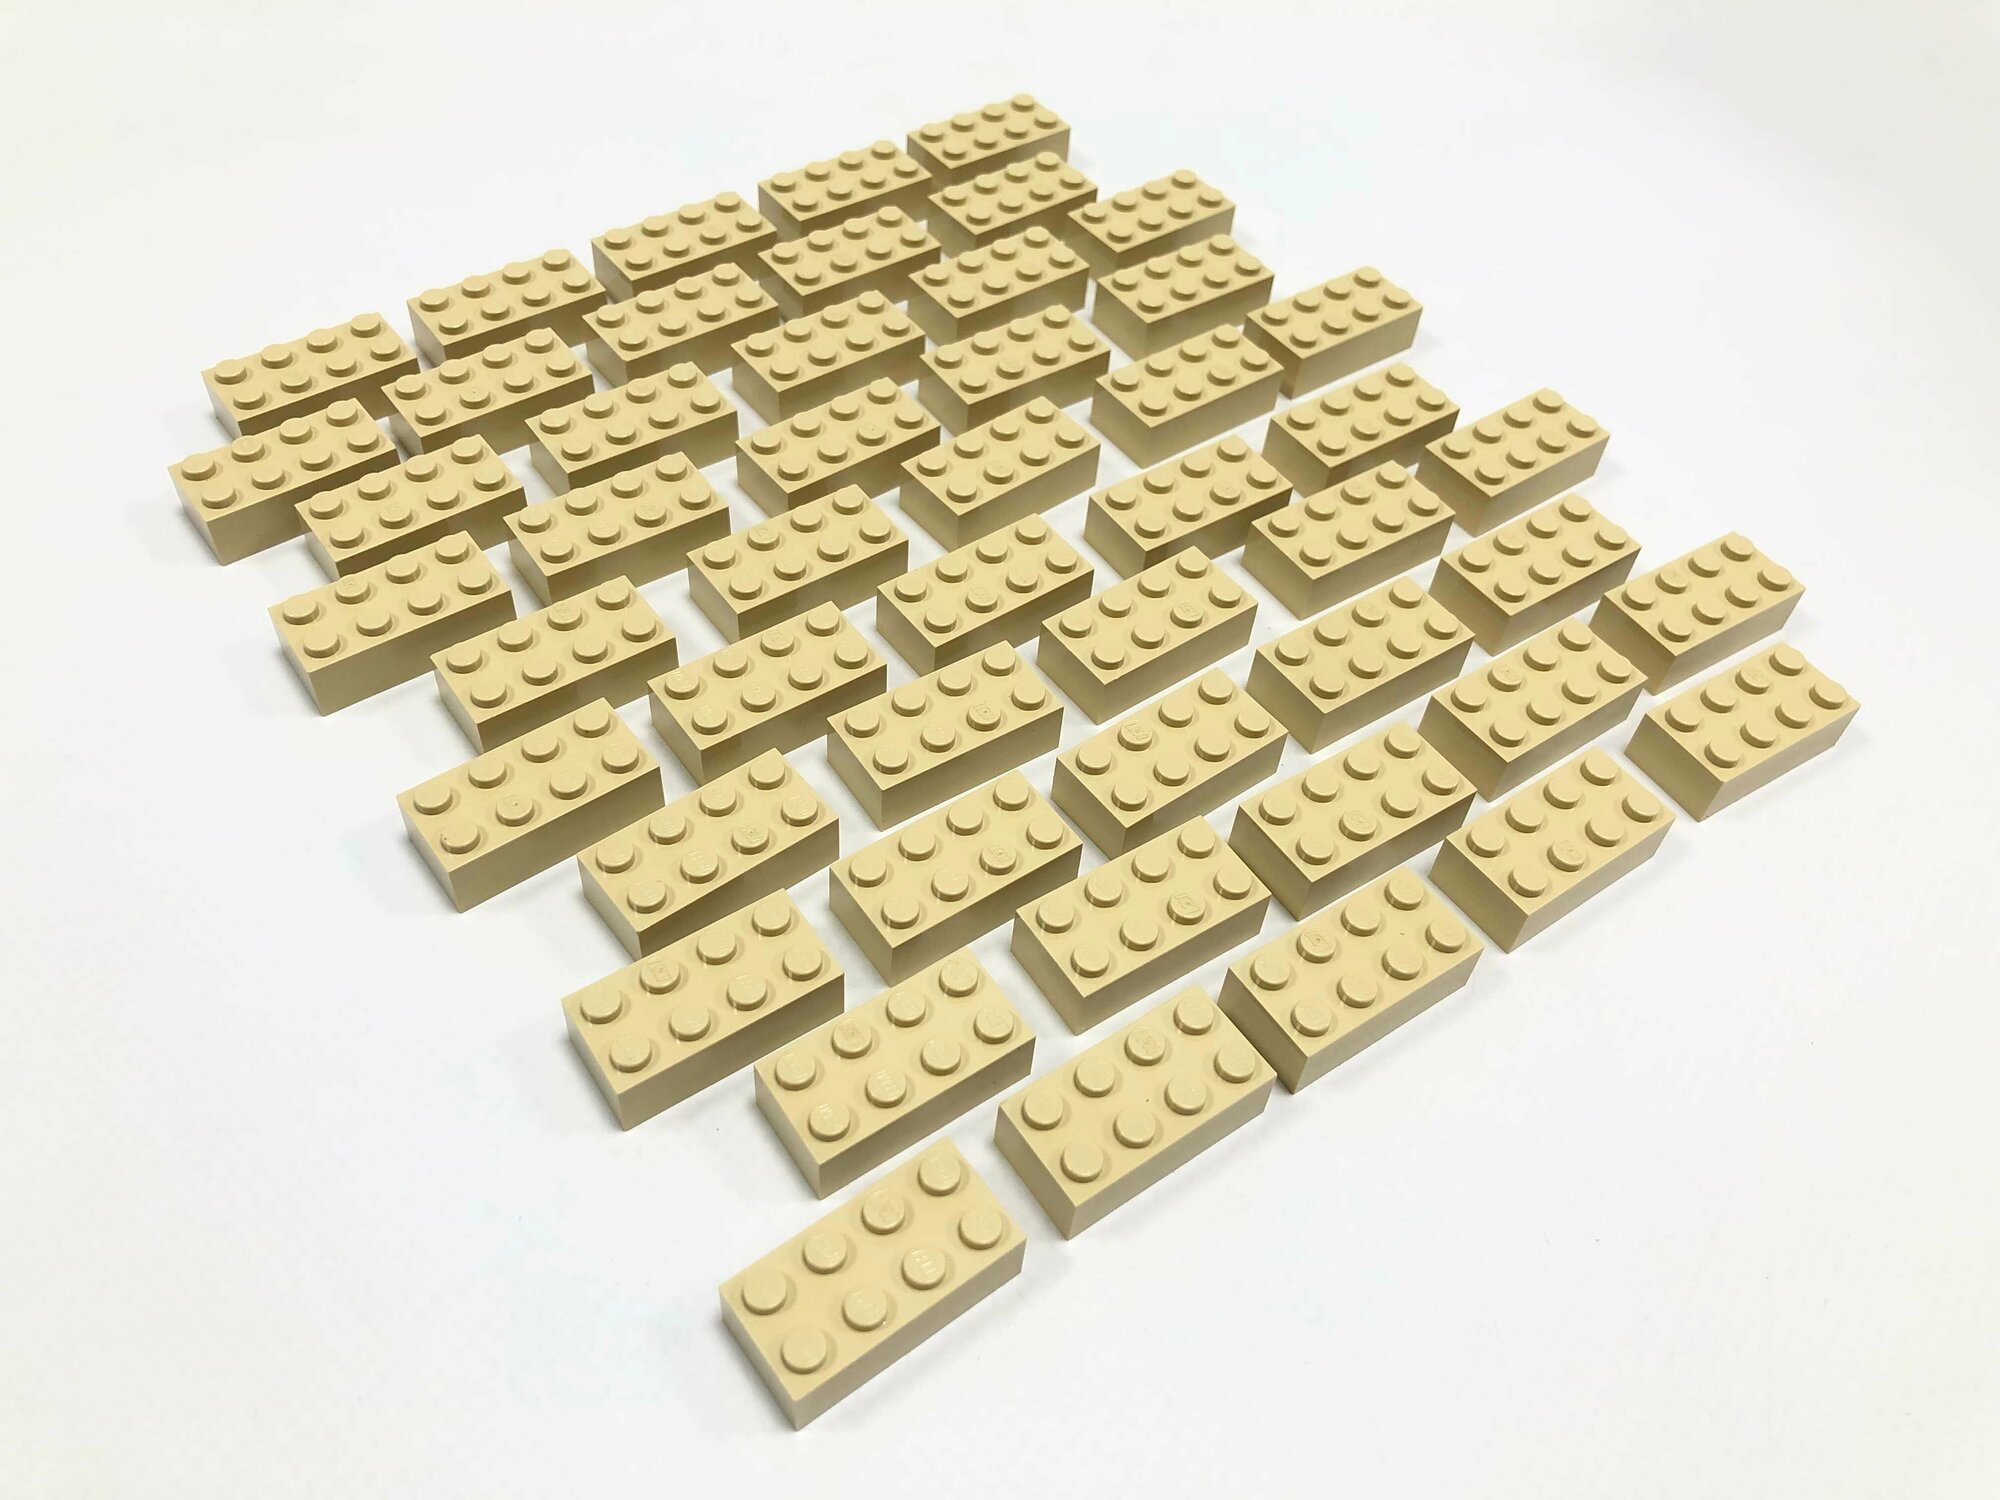 Набор с деталями Лего Lego 50 шт. 3001